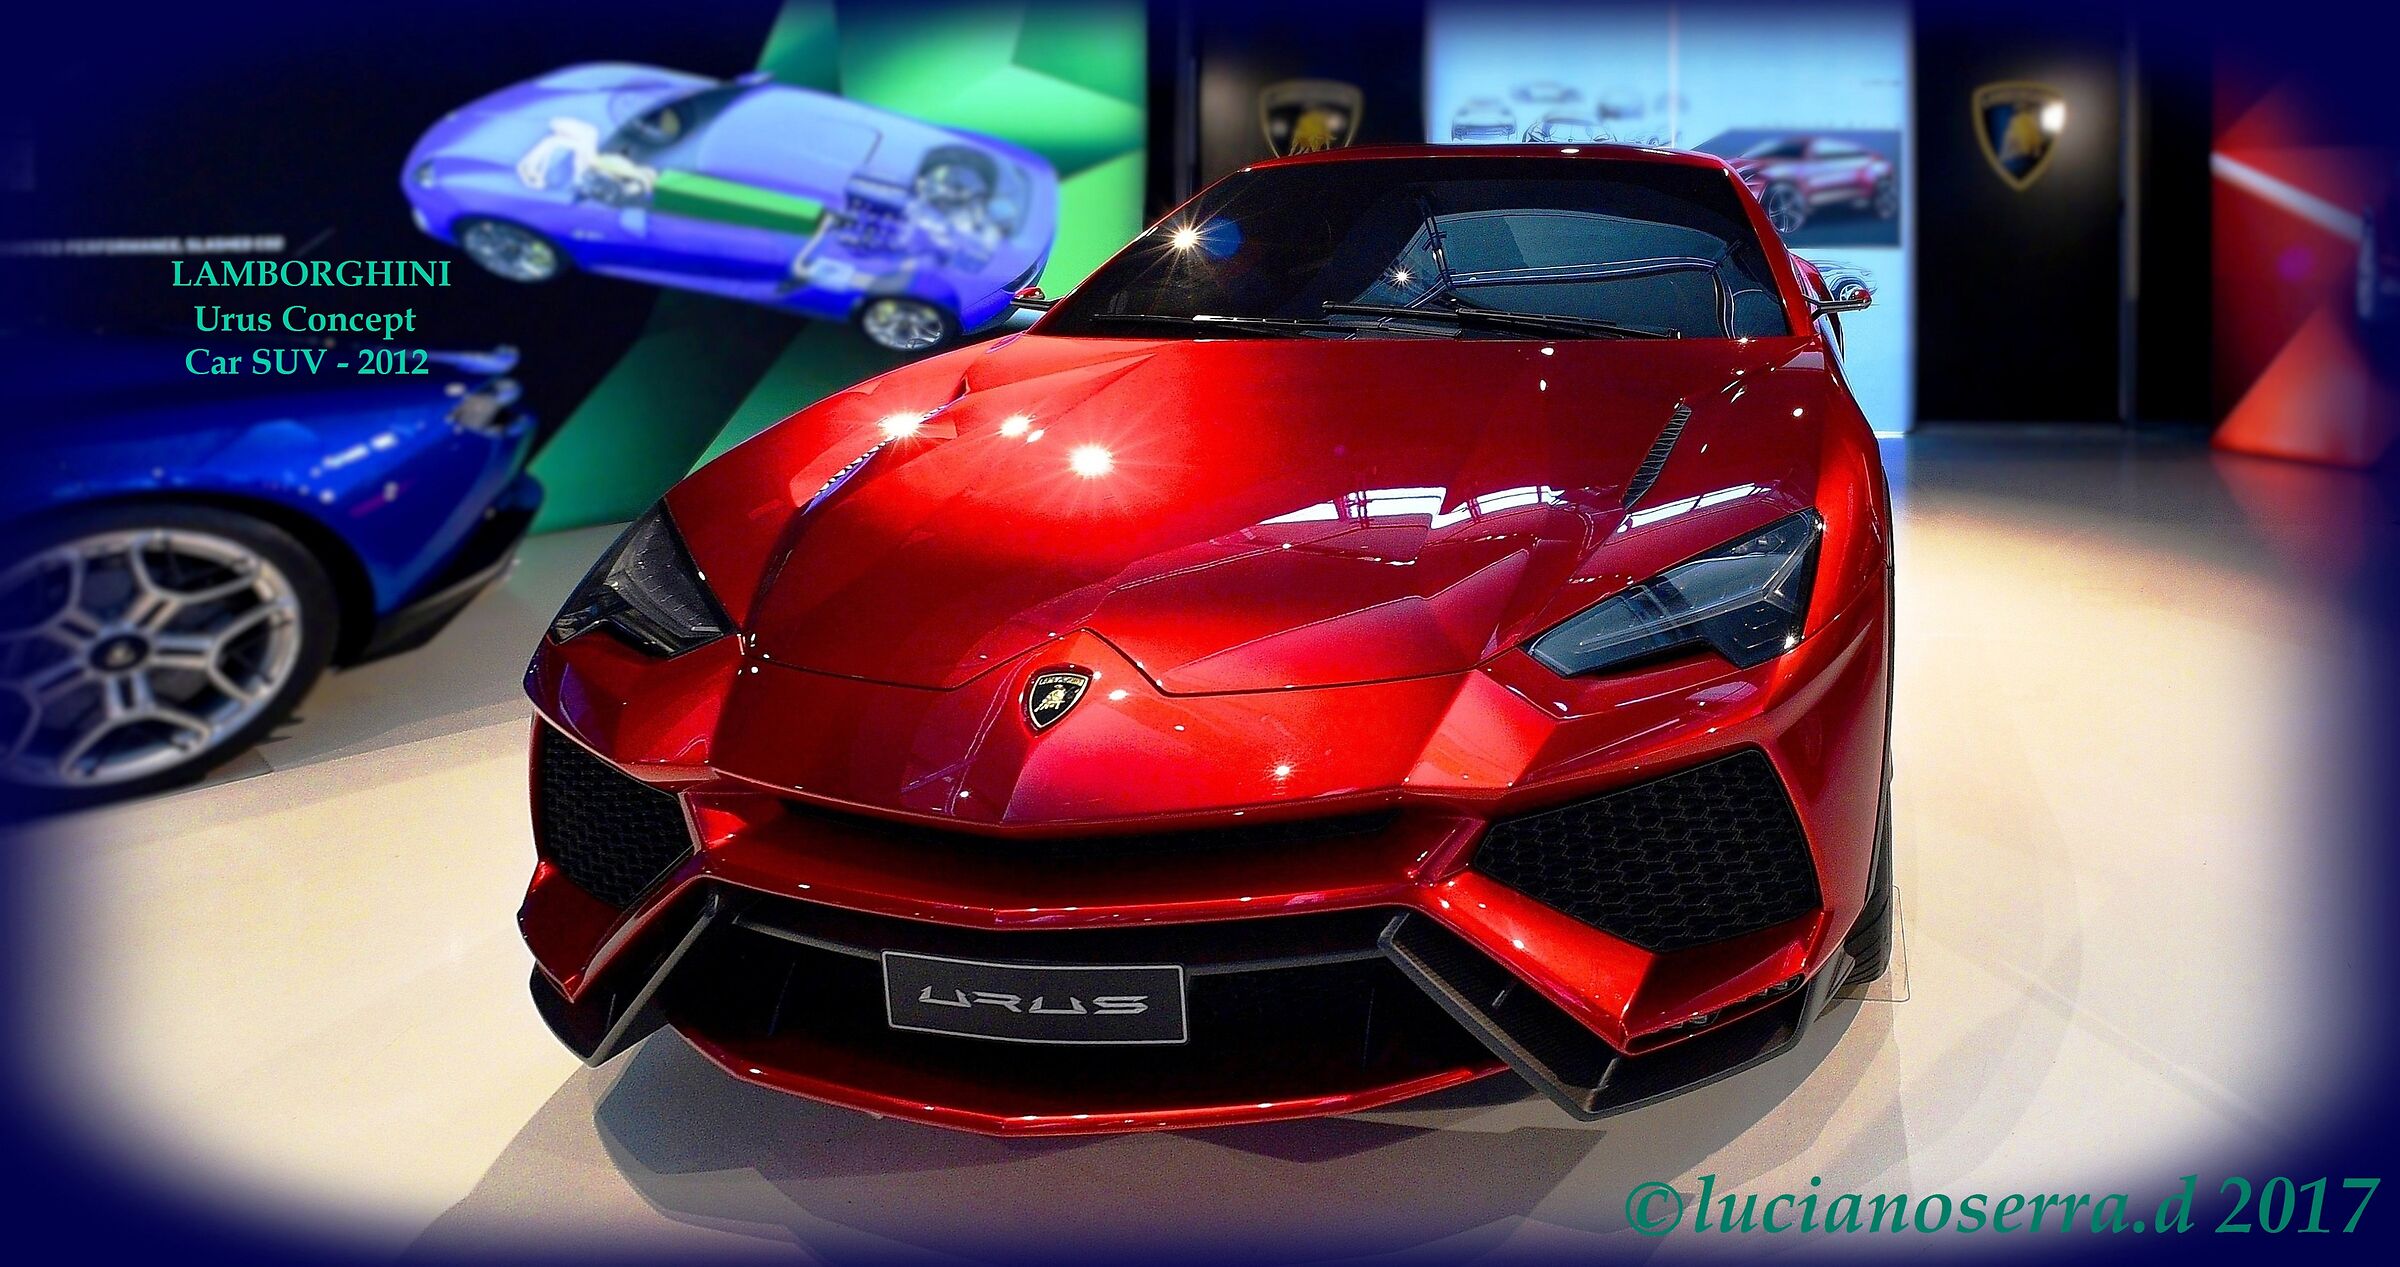 Lamborghini Urus Concept Car SUV - 2012...